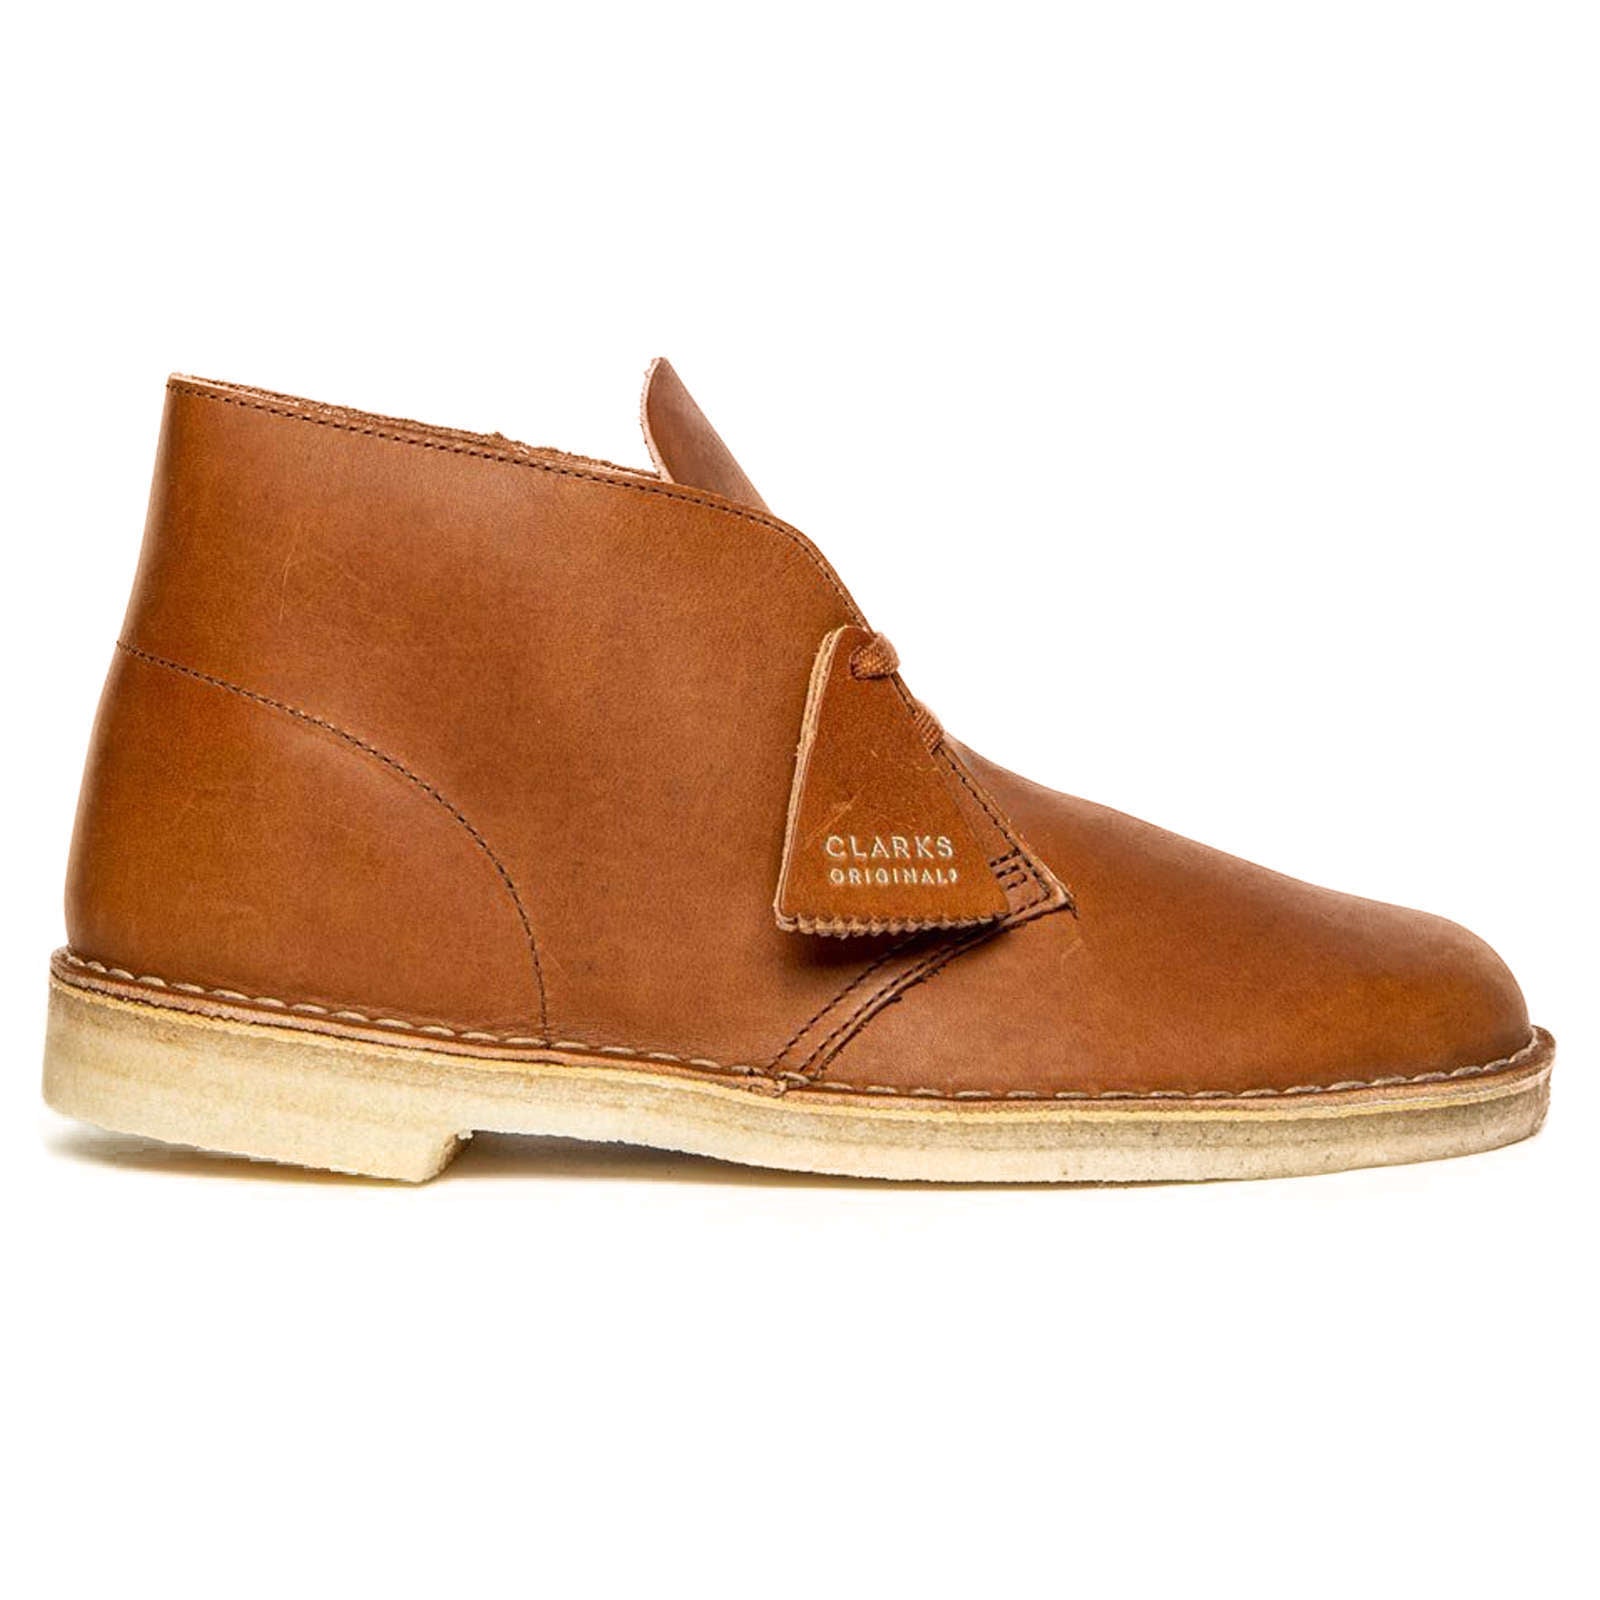 Clarks Originals Desert Boot Leather Men's Boots#color_dark tan